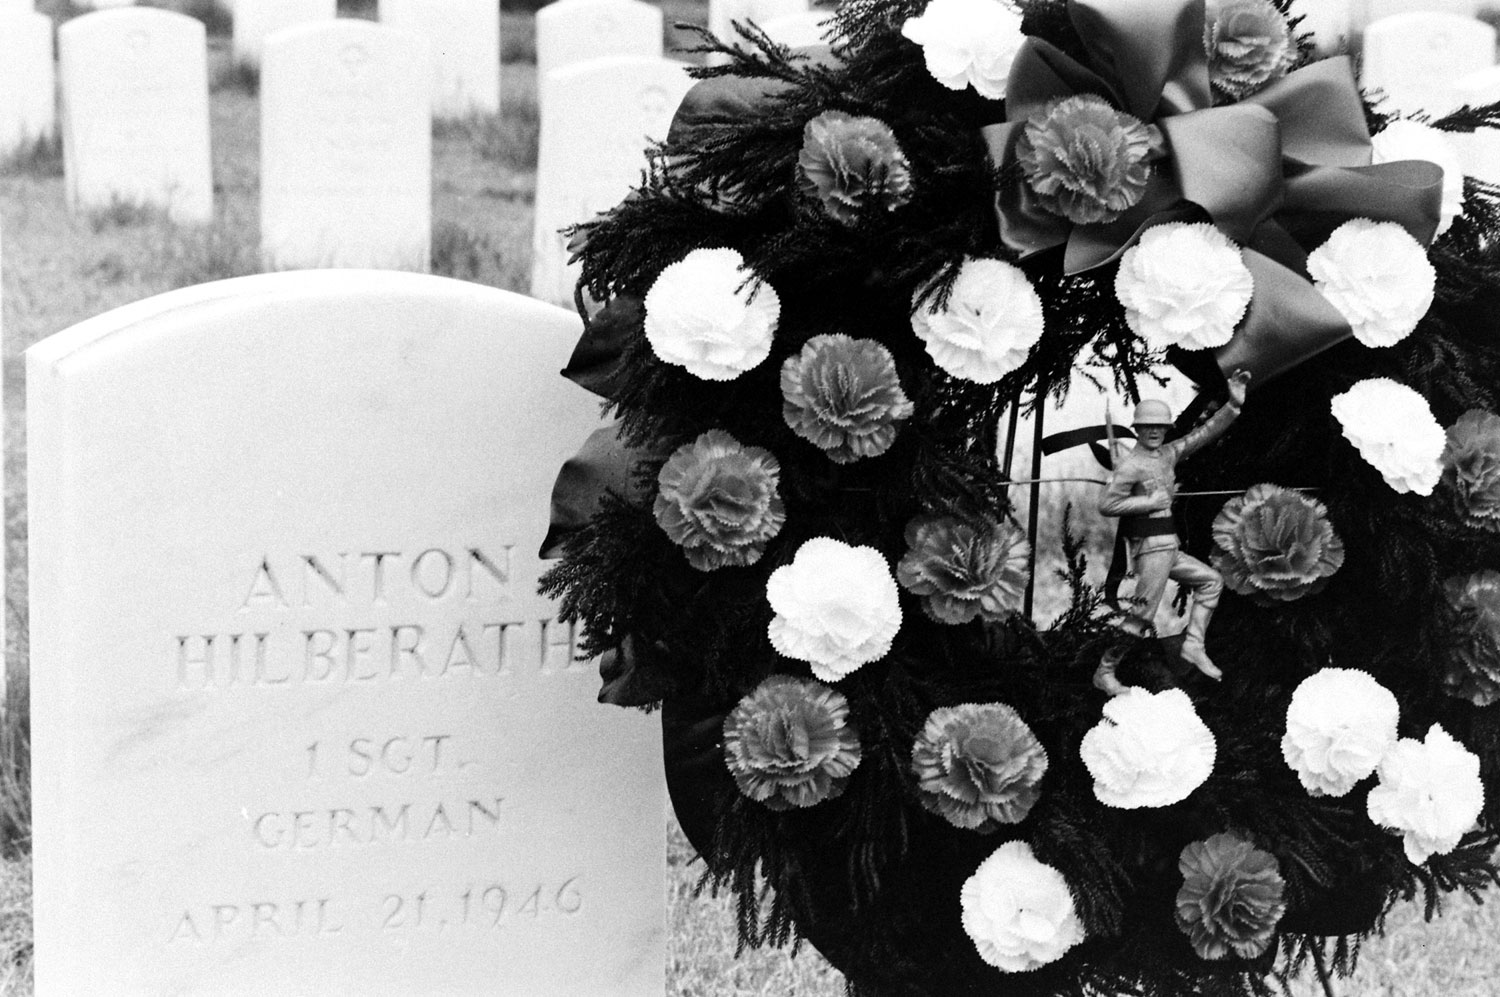 Arlington National Cemetery 1965